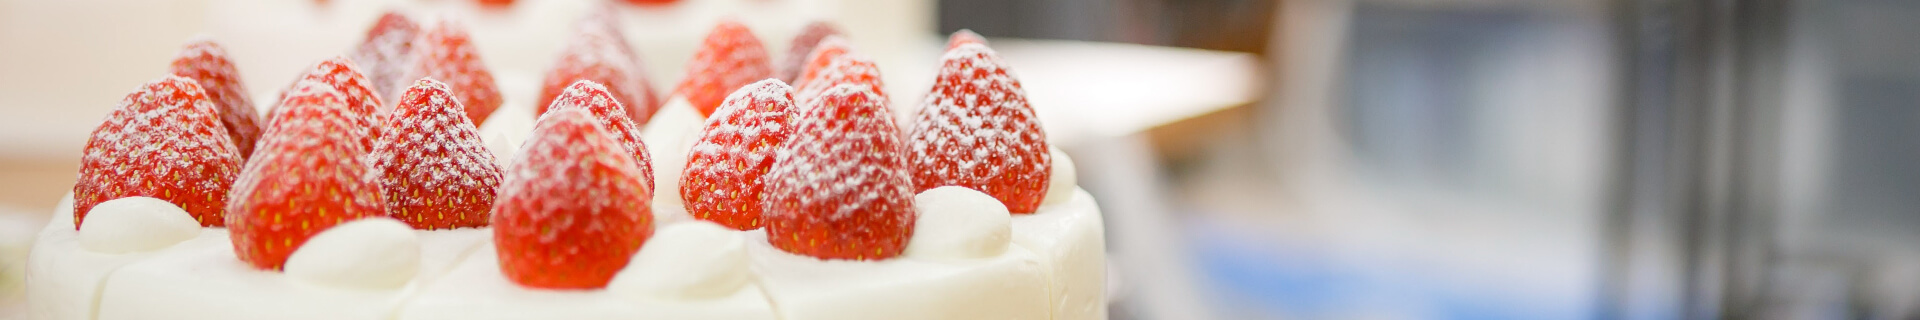 【1月のおすすめケーキ】紅ほっぺ苺のモンブラン - 松本市のケーキ屋 5HORN(ファイブホルン)【公式】